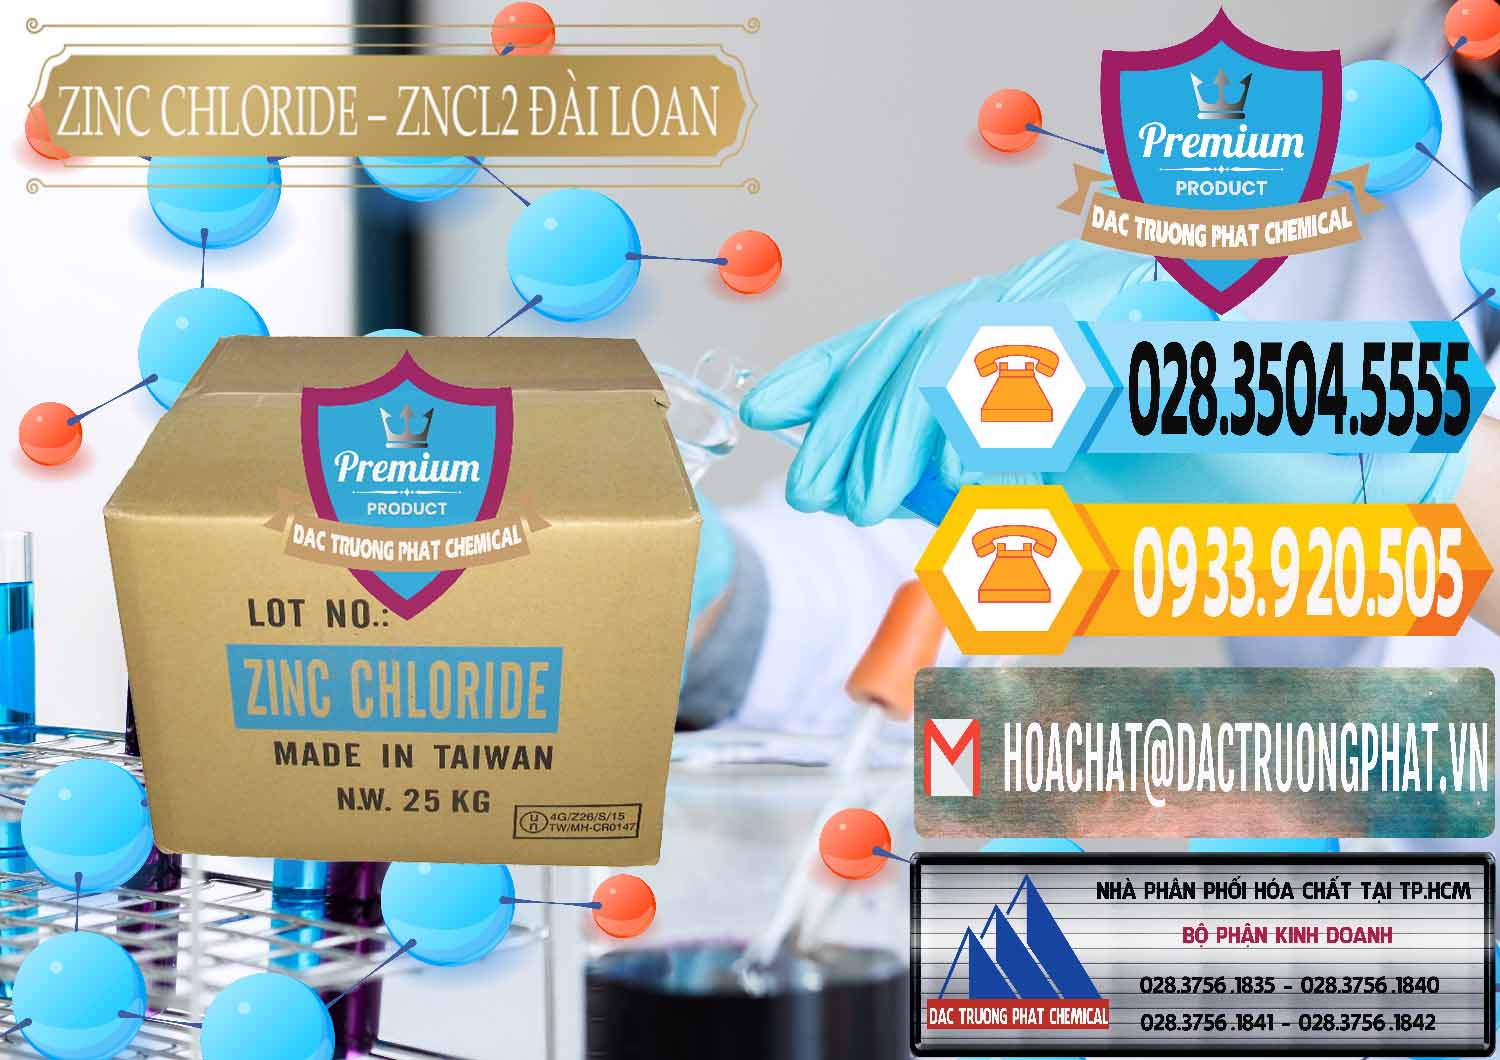 Nơi bán - phân phối Zinc Chloride - ZNCL2 96% Đài Loan Taiwan - 0178 - Cty kinh doanh - phân phối hóa chất tại TP.HCM - hoachattayrua.net